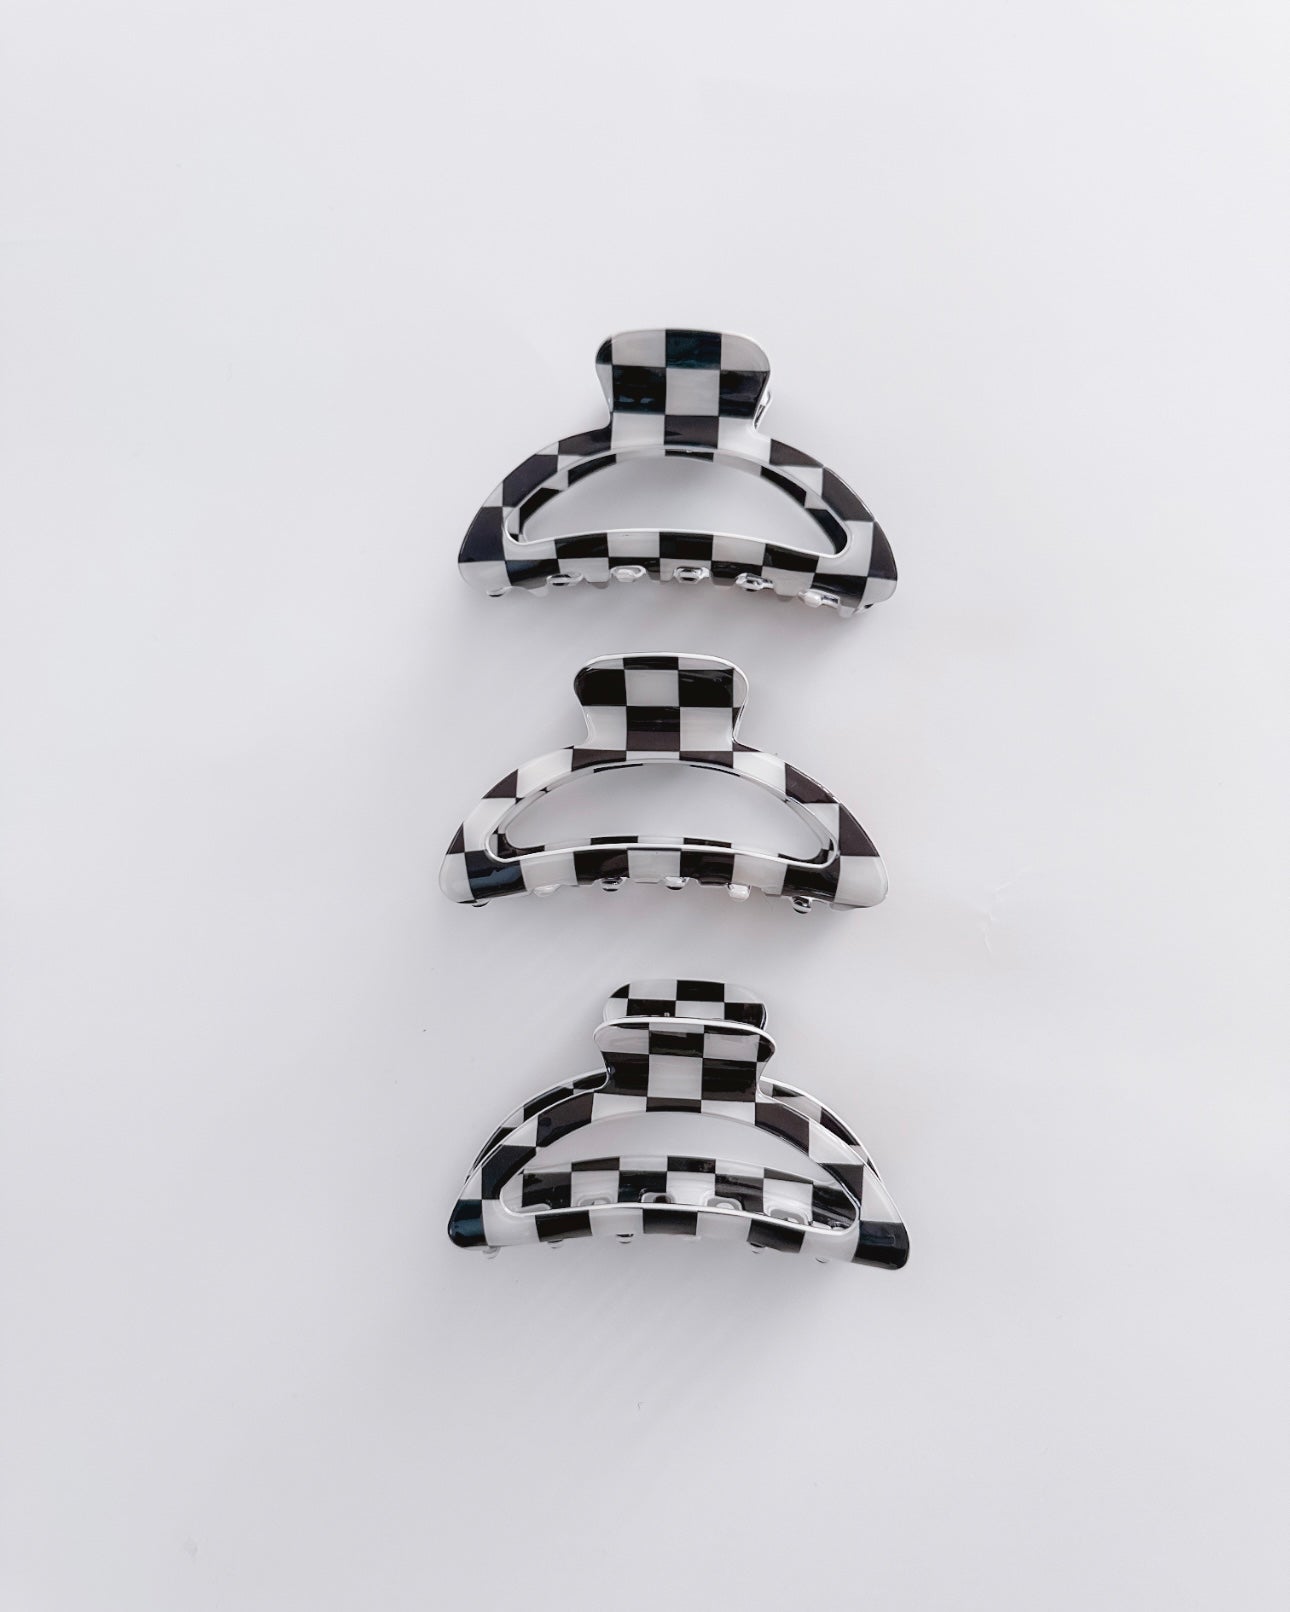 Checkered Claw Clip